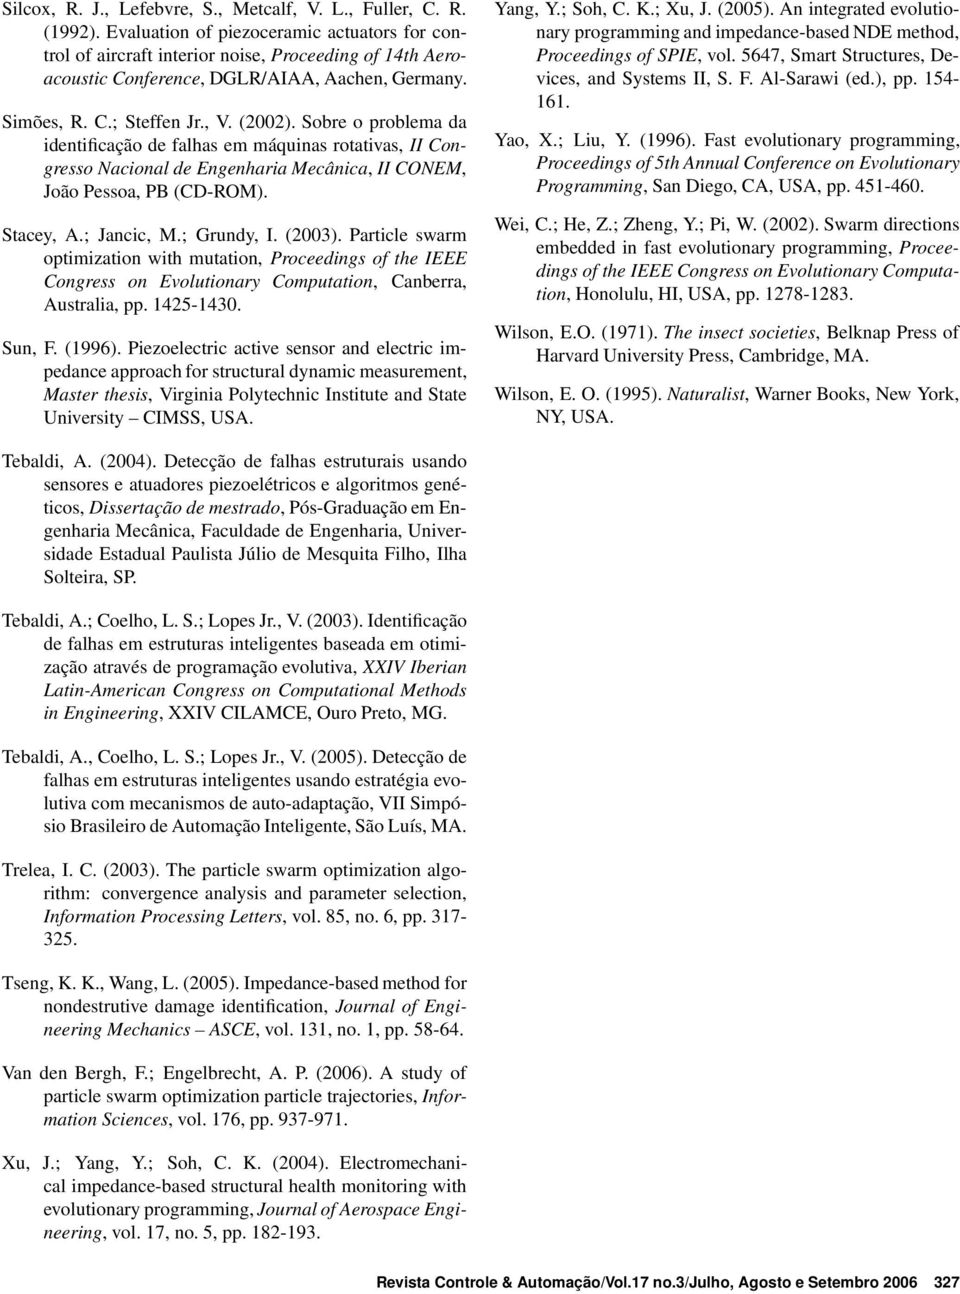 Sobre o problema da identificação de falhas em máquinas rotativas, II Congresso Nacional de Engenharia Mecânica, II CONEM, João Pessoa, PB (CD-ROM). Stacey, A.; Jancic, M.; Grundy, I. (2003).